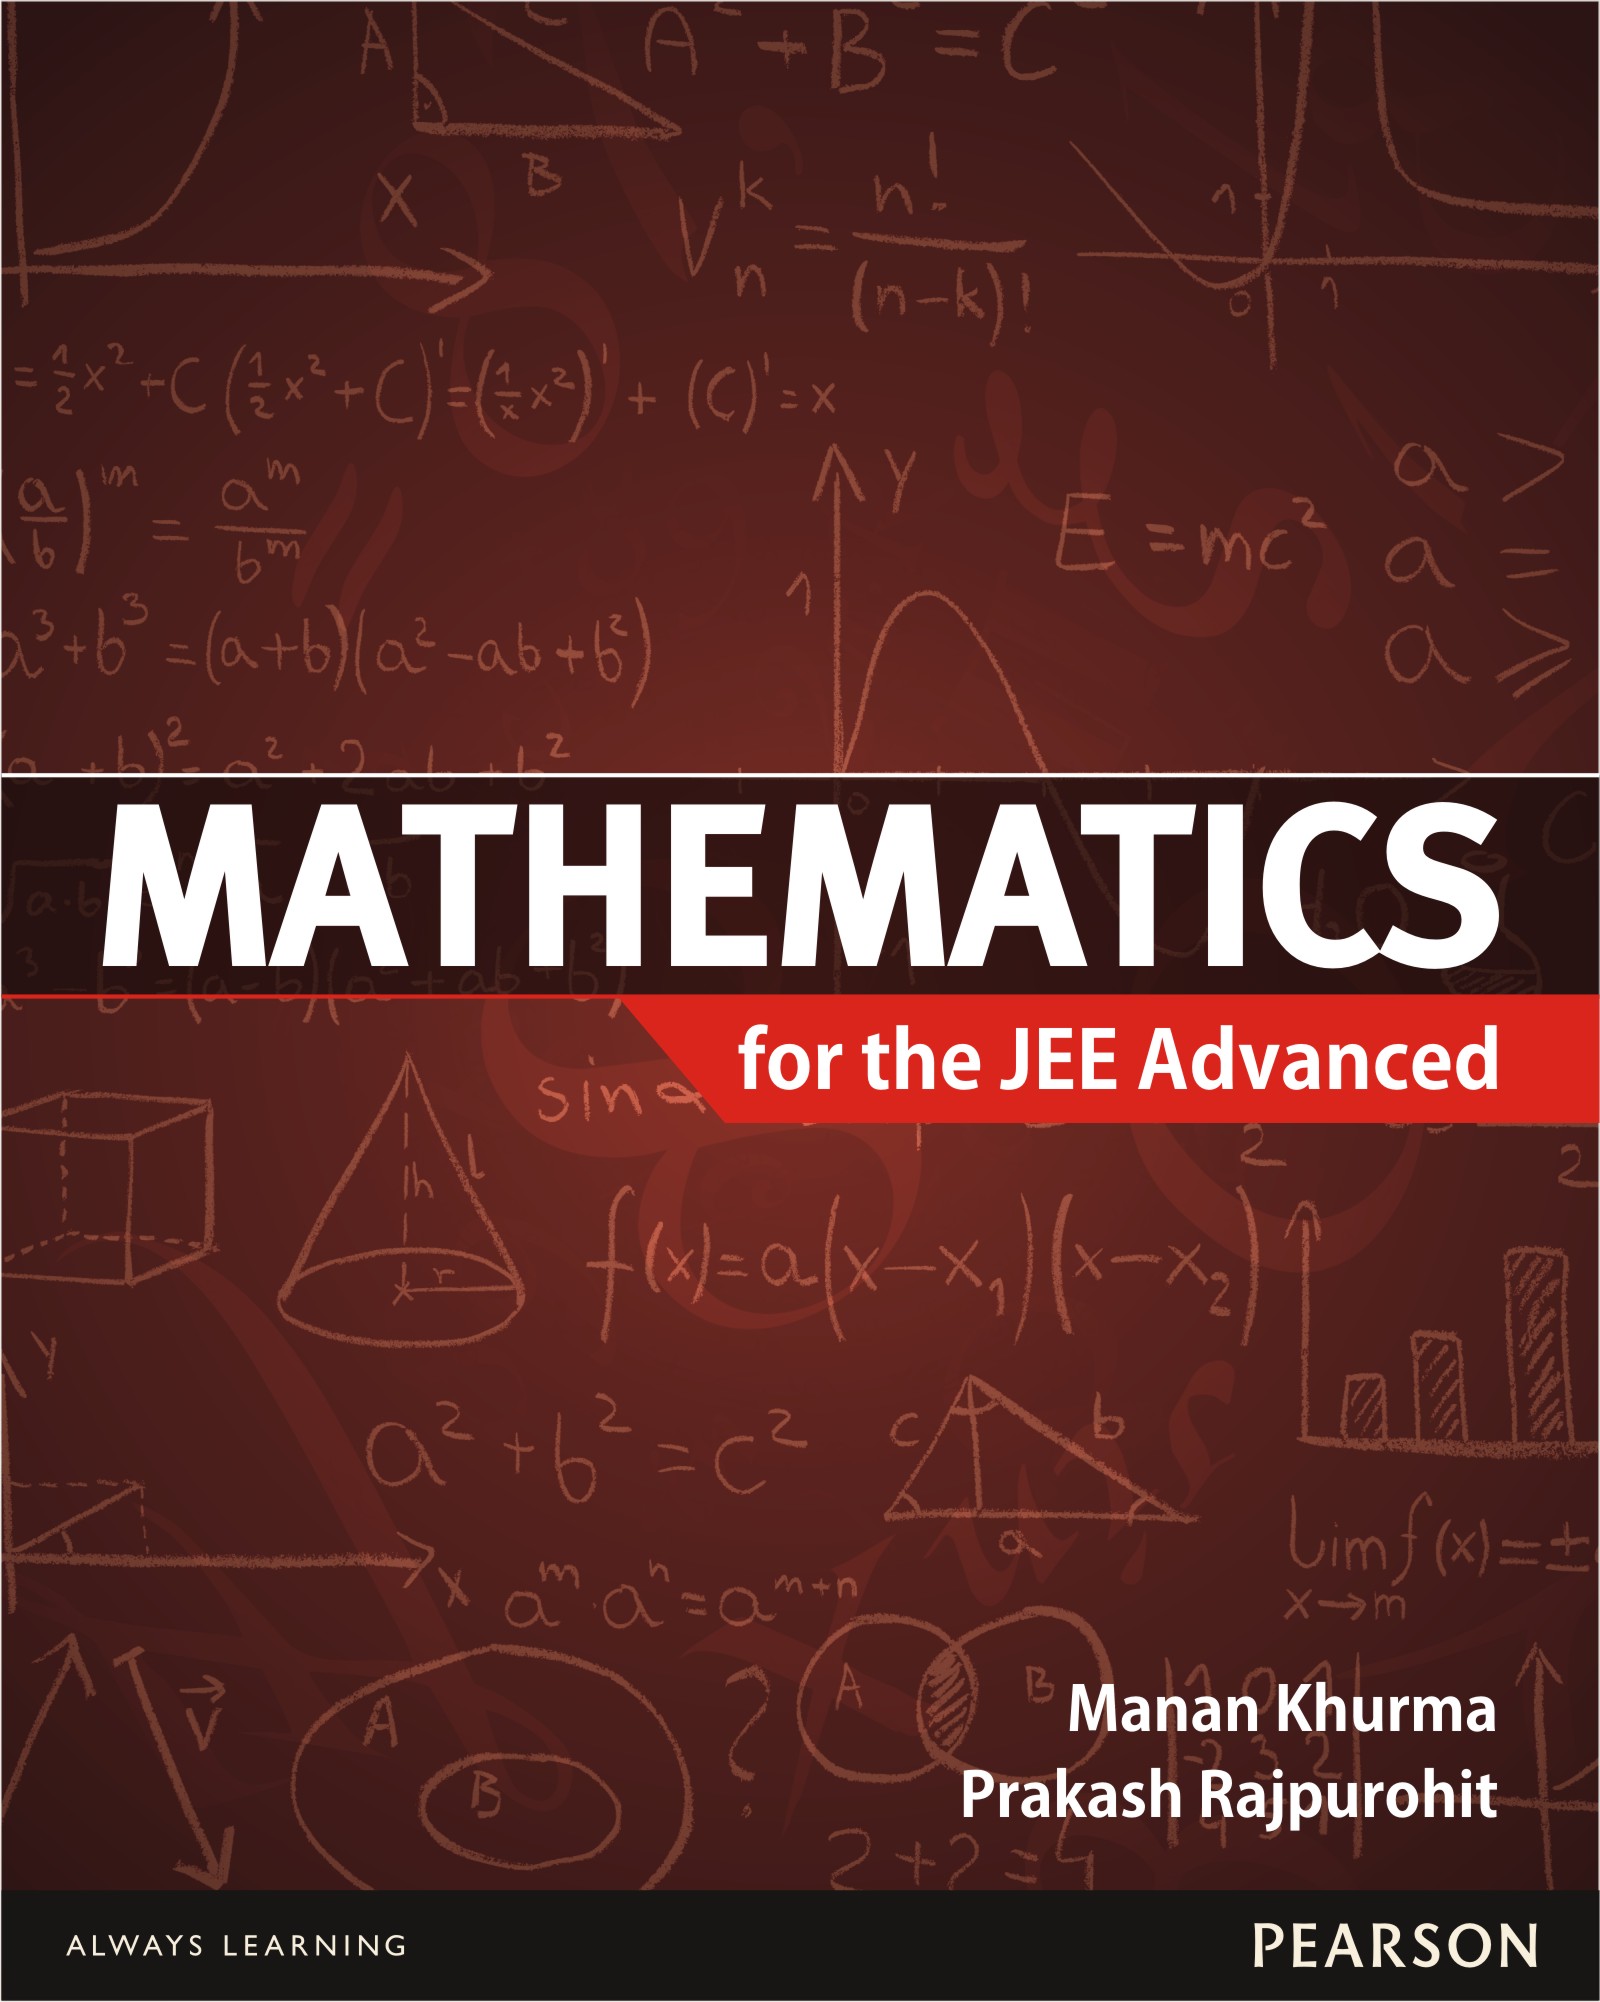 My Book on Mathematics | Prakash Rajpurohit's Blog